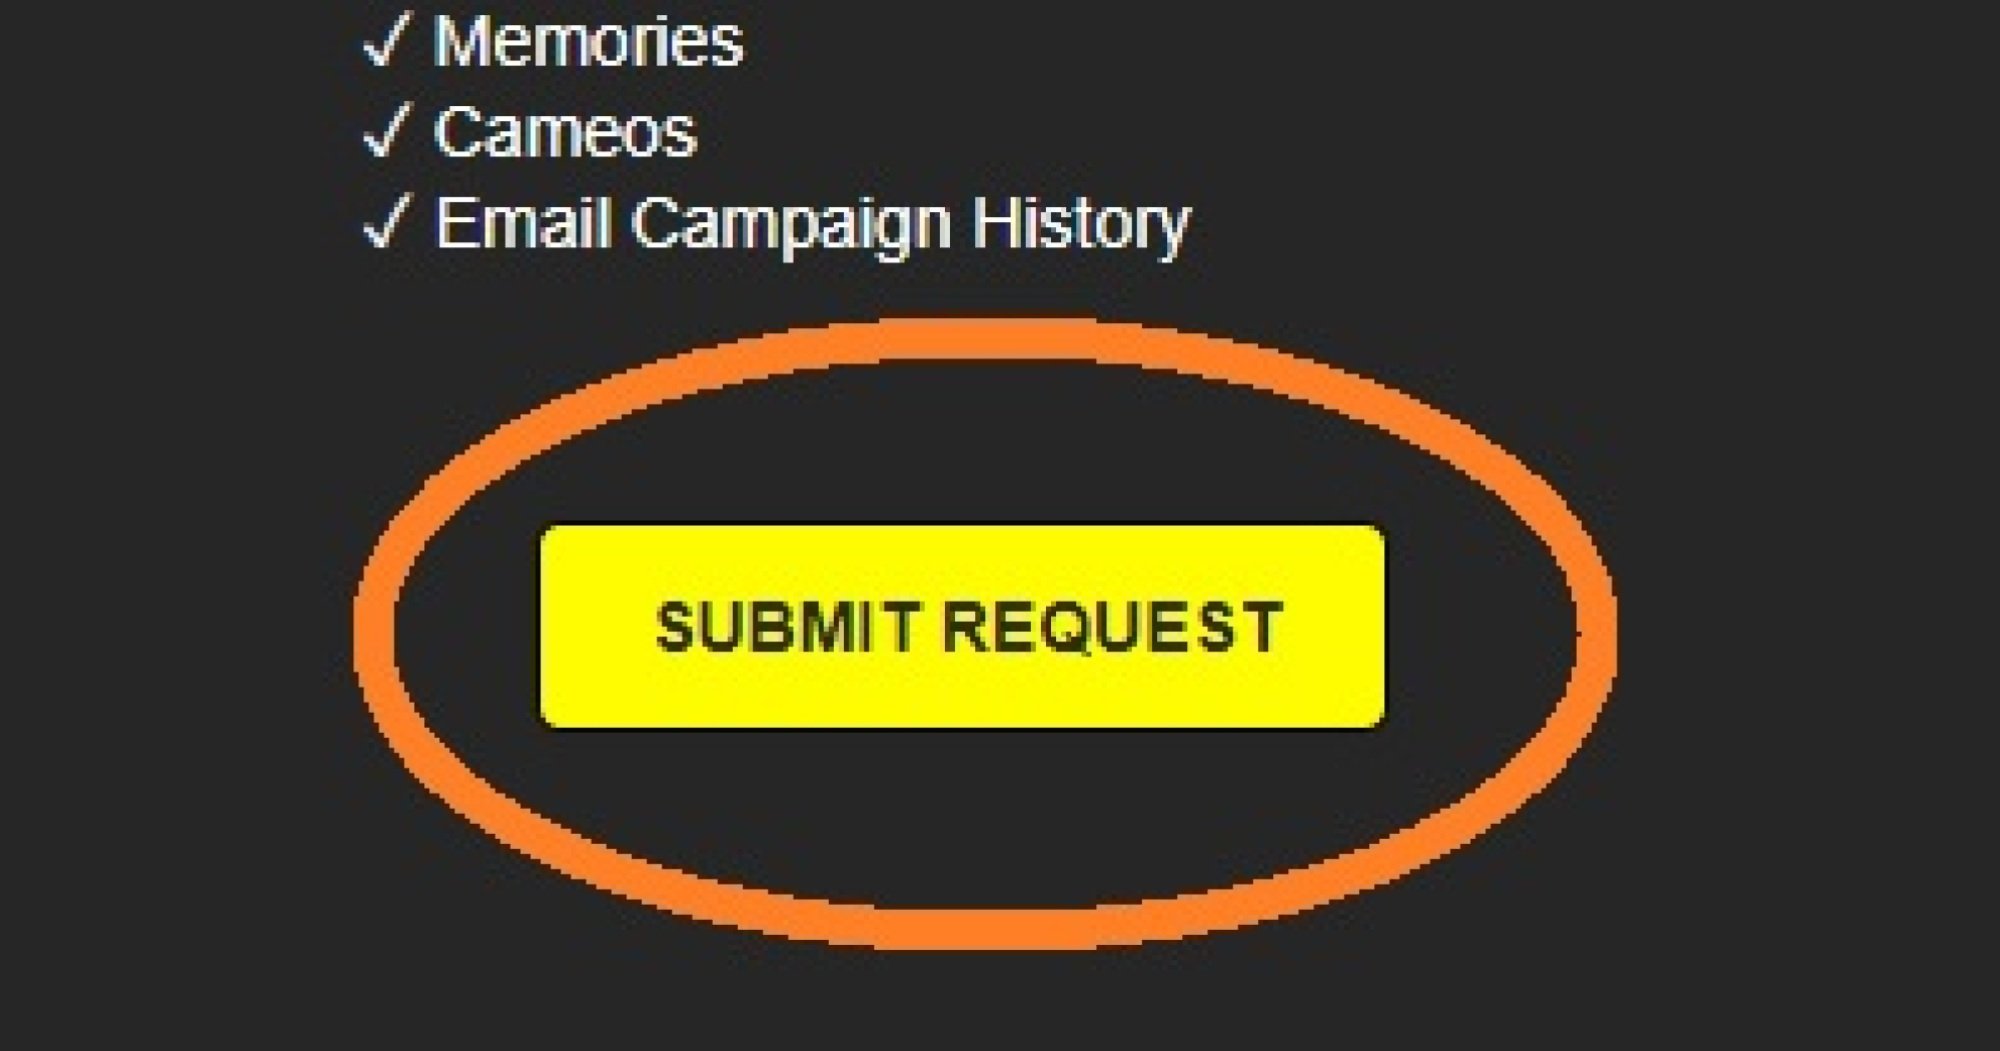 An orange circle around "Send request."